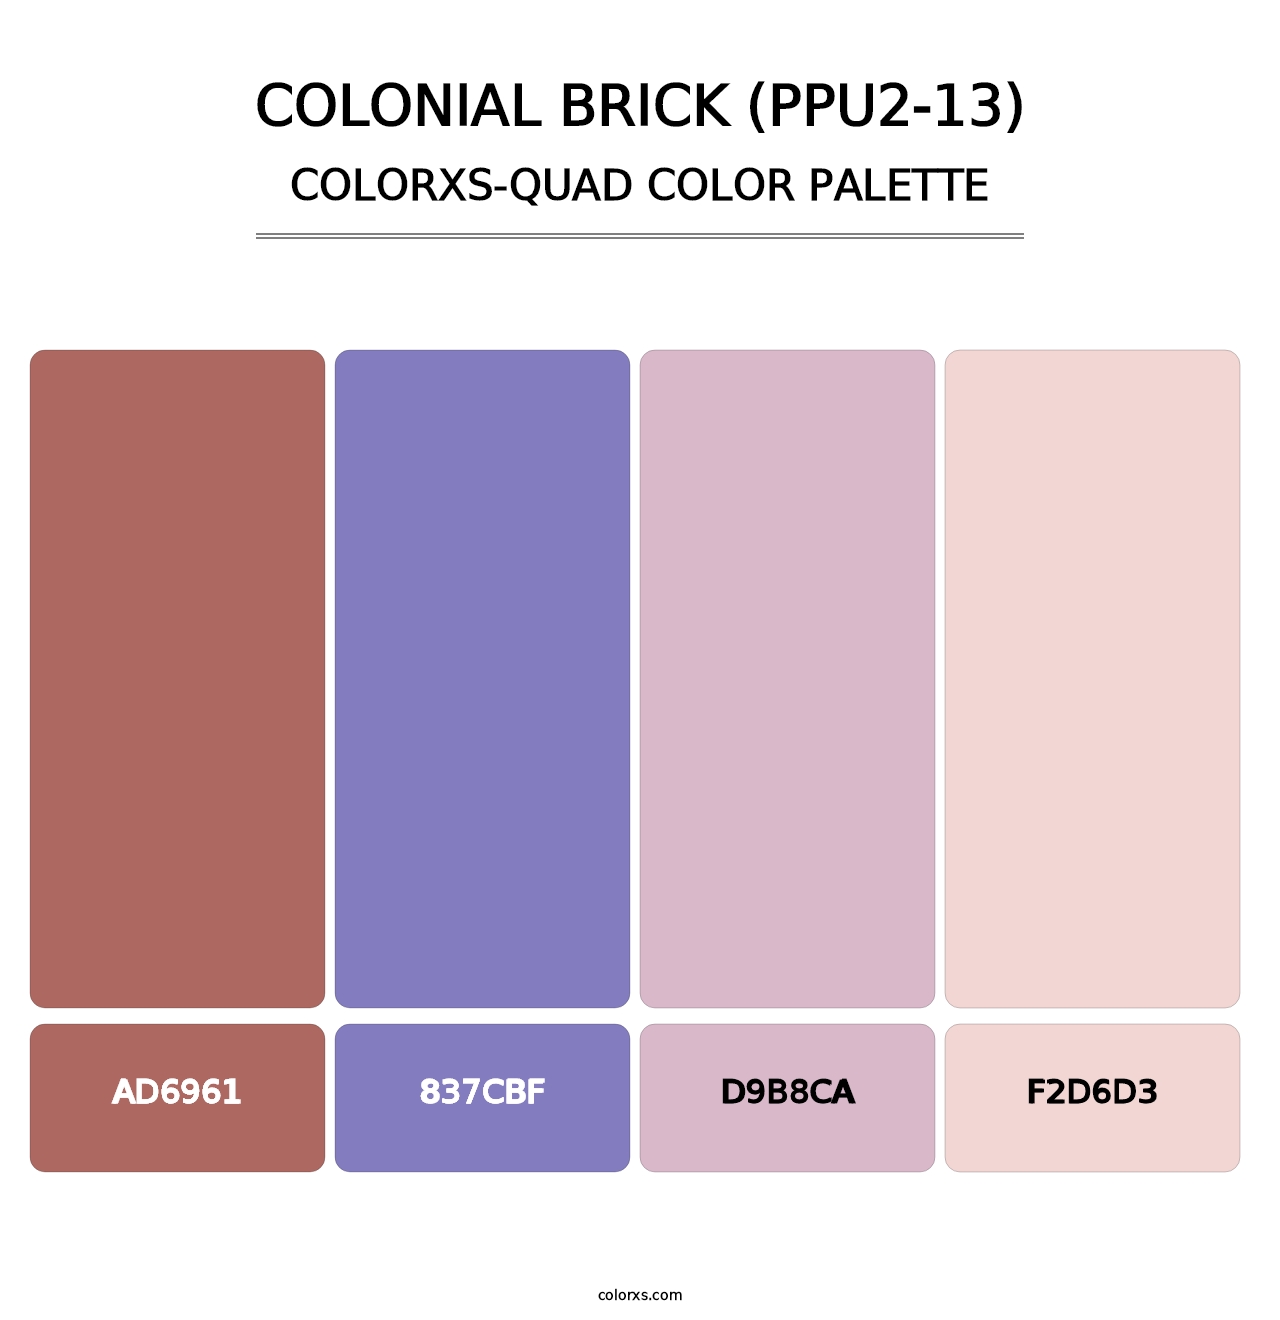 Colonial Brick (PPU2-13) - Colorxs Quad Palette